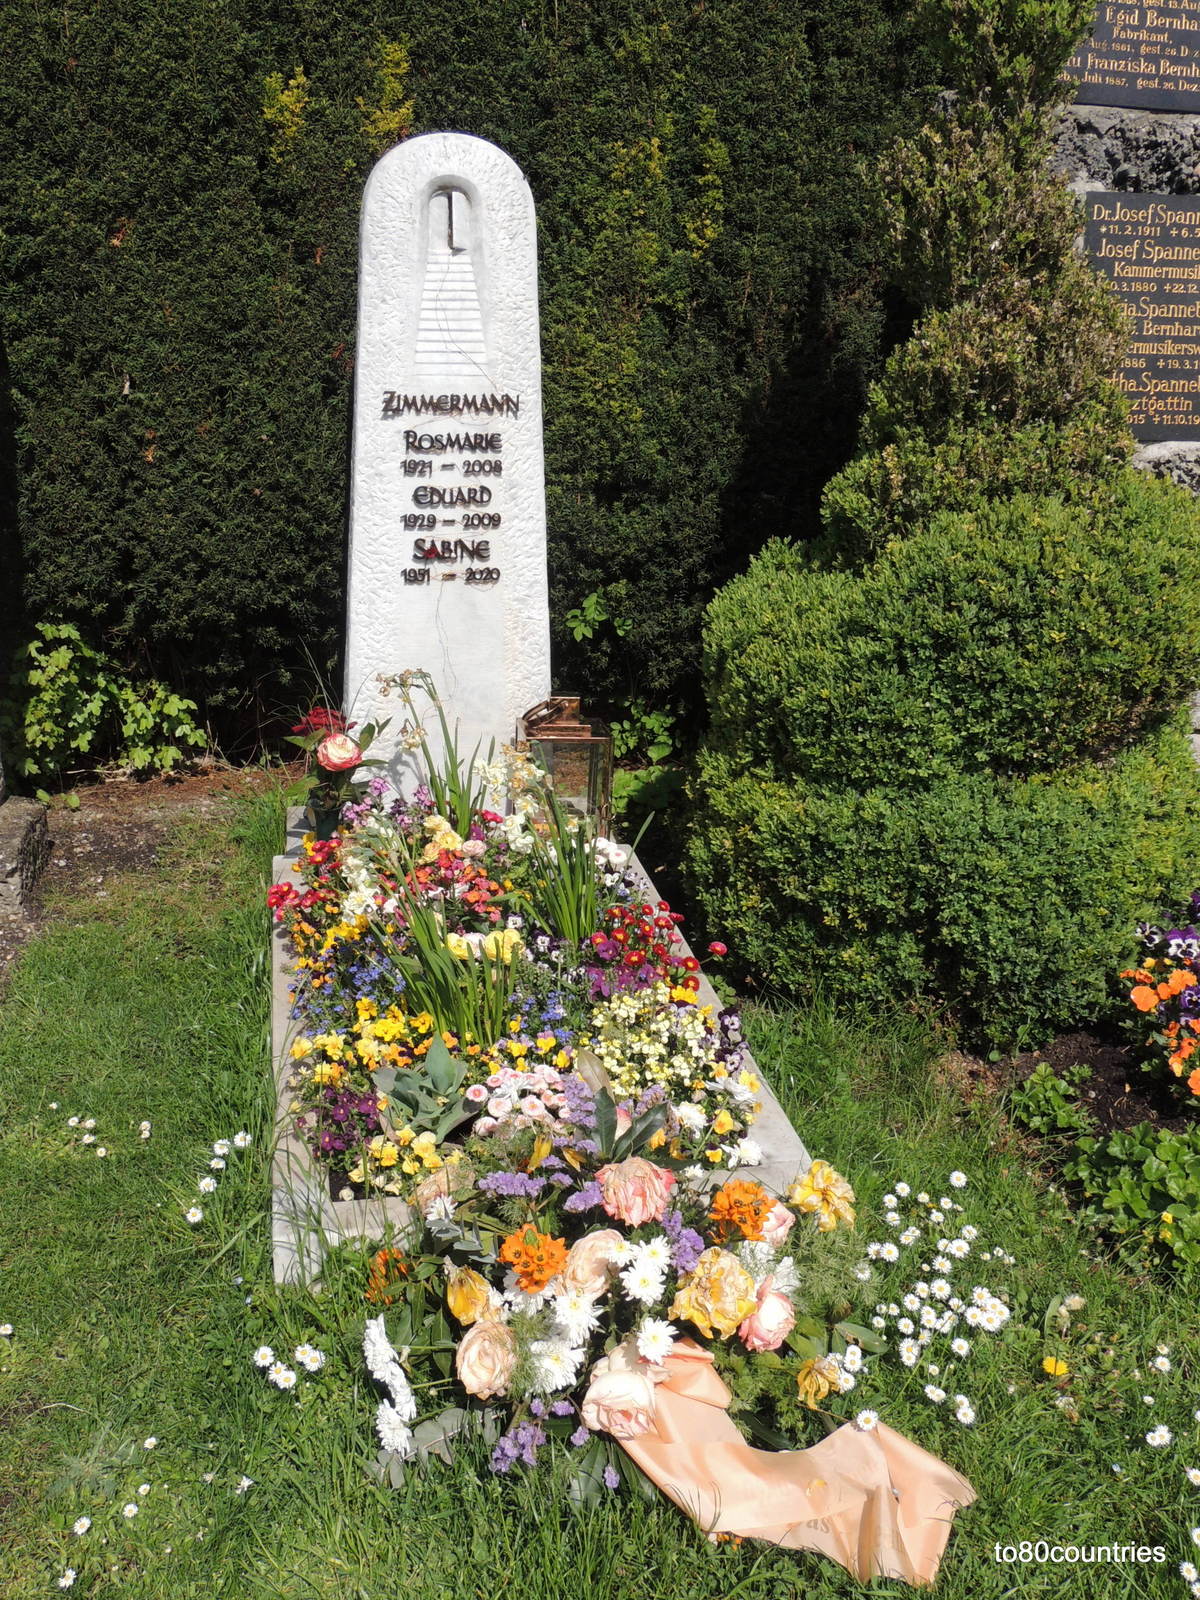 Prominentengräber: Eduard und Sabine Zimmermann - Nordfriedhof München